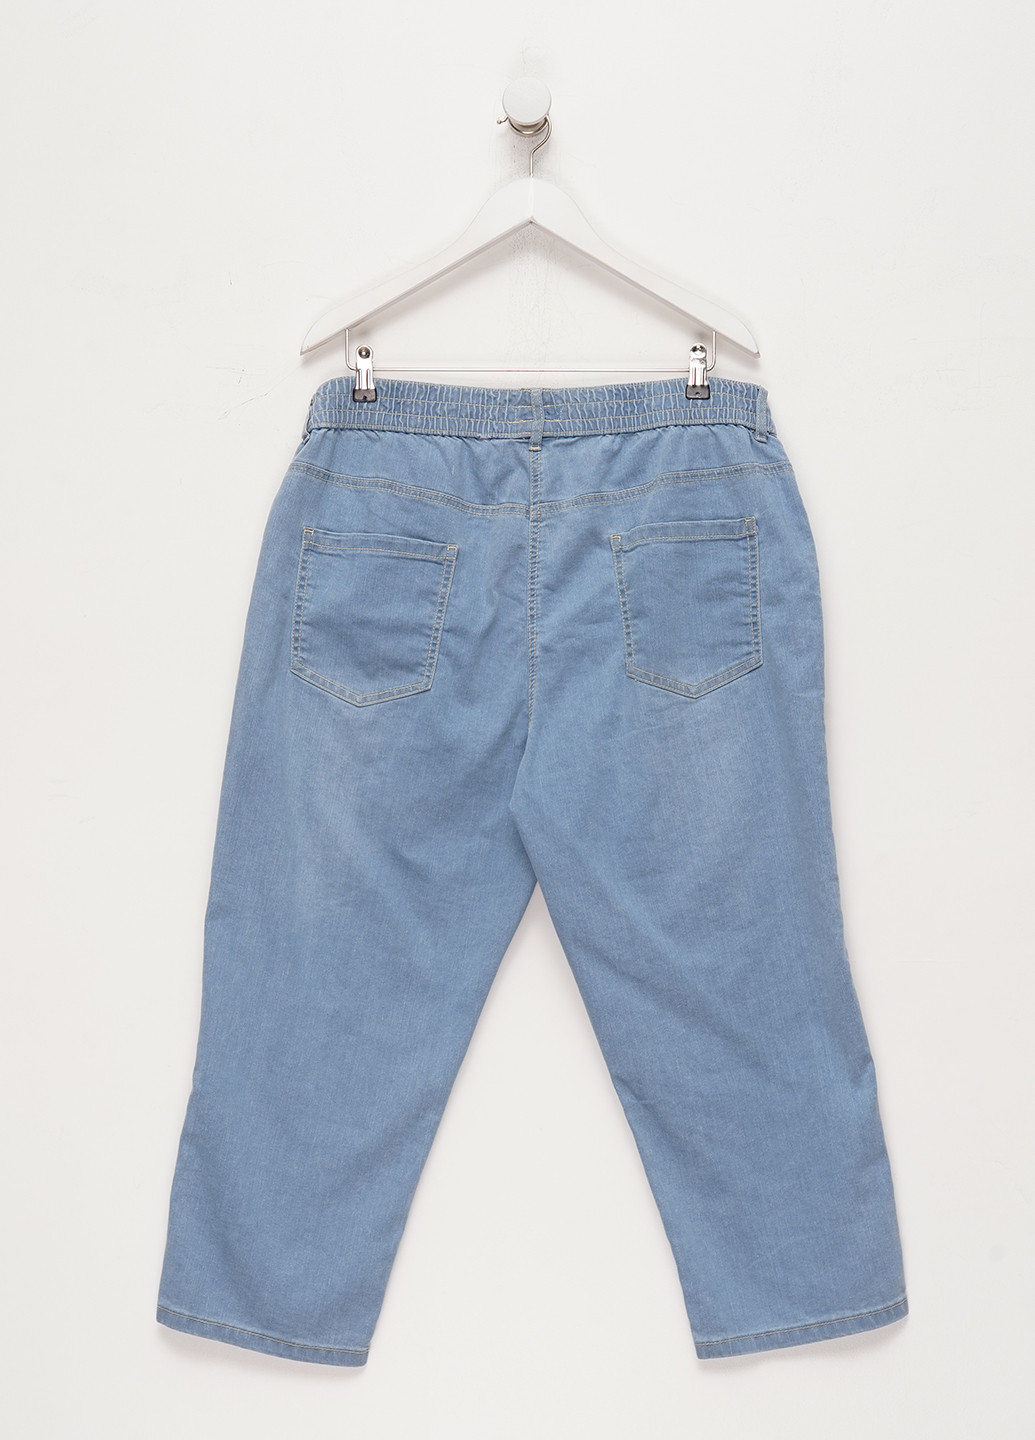 Бриджы Long Island однотонные голубые джинсовые хлопок